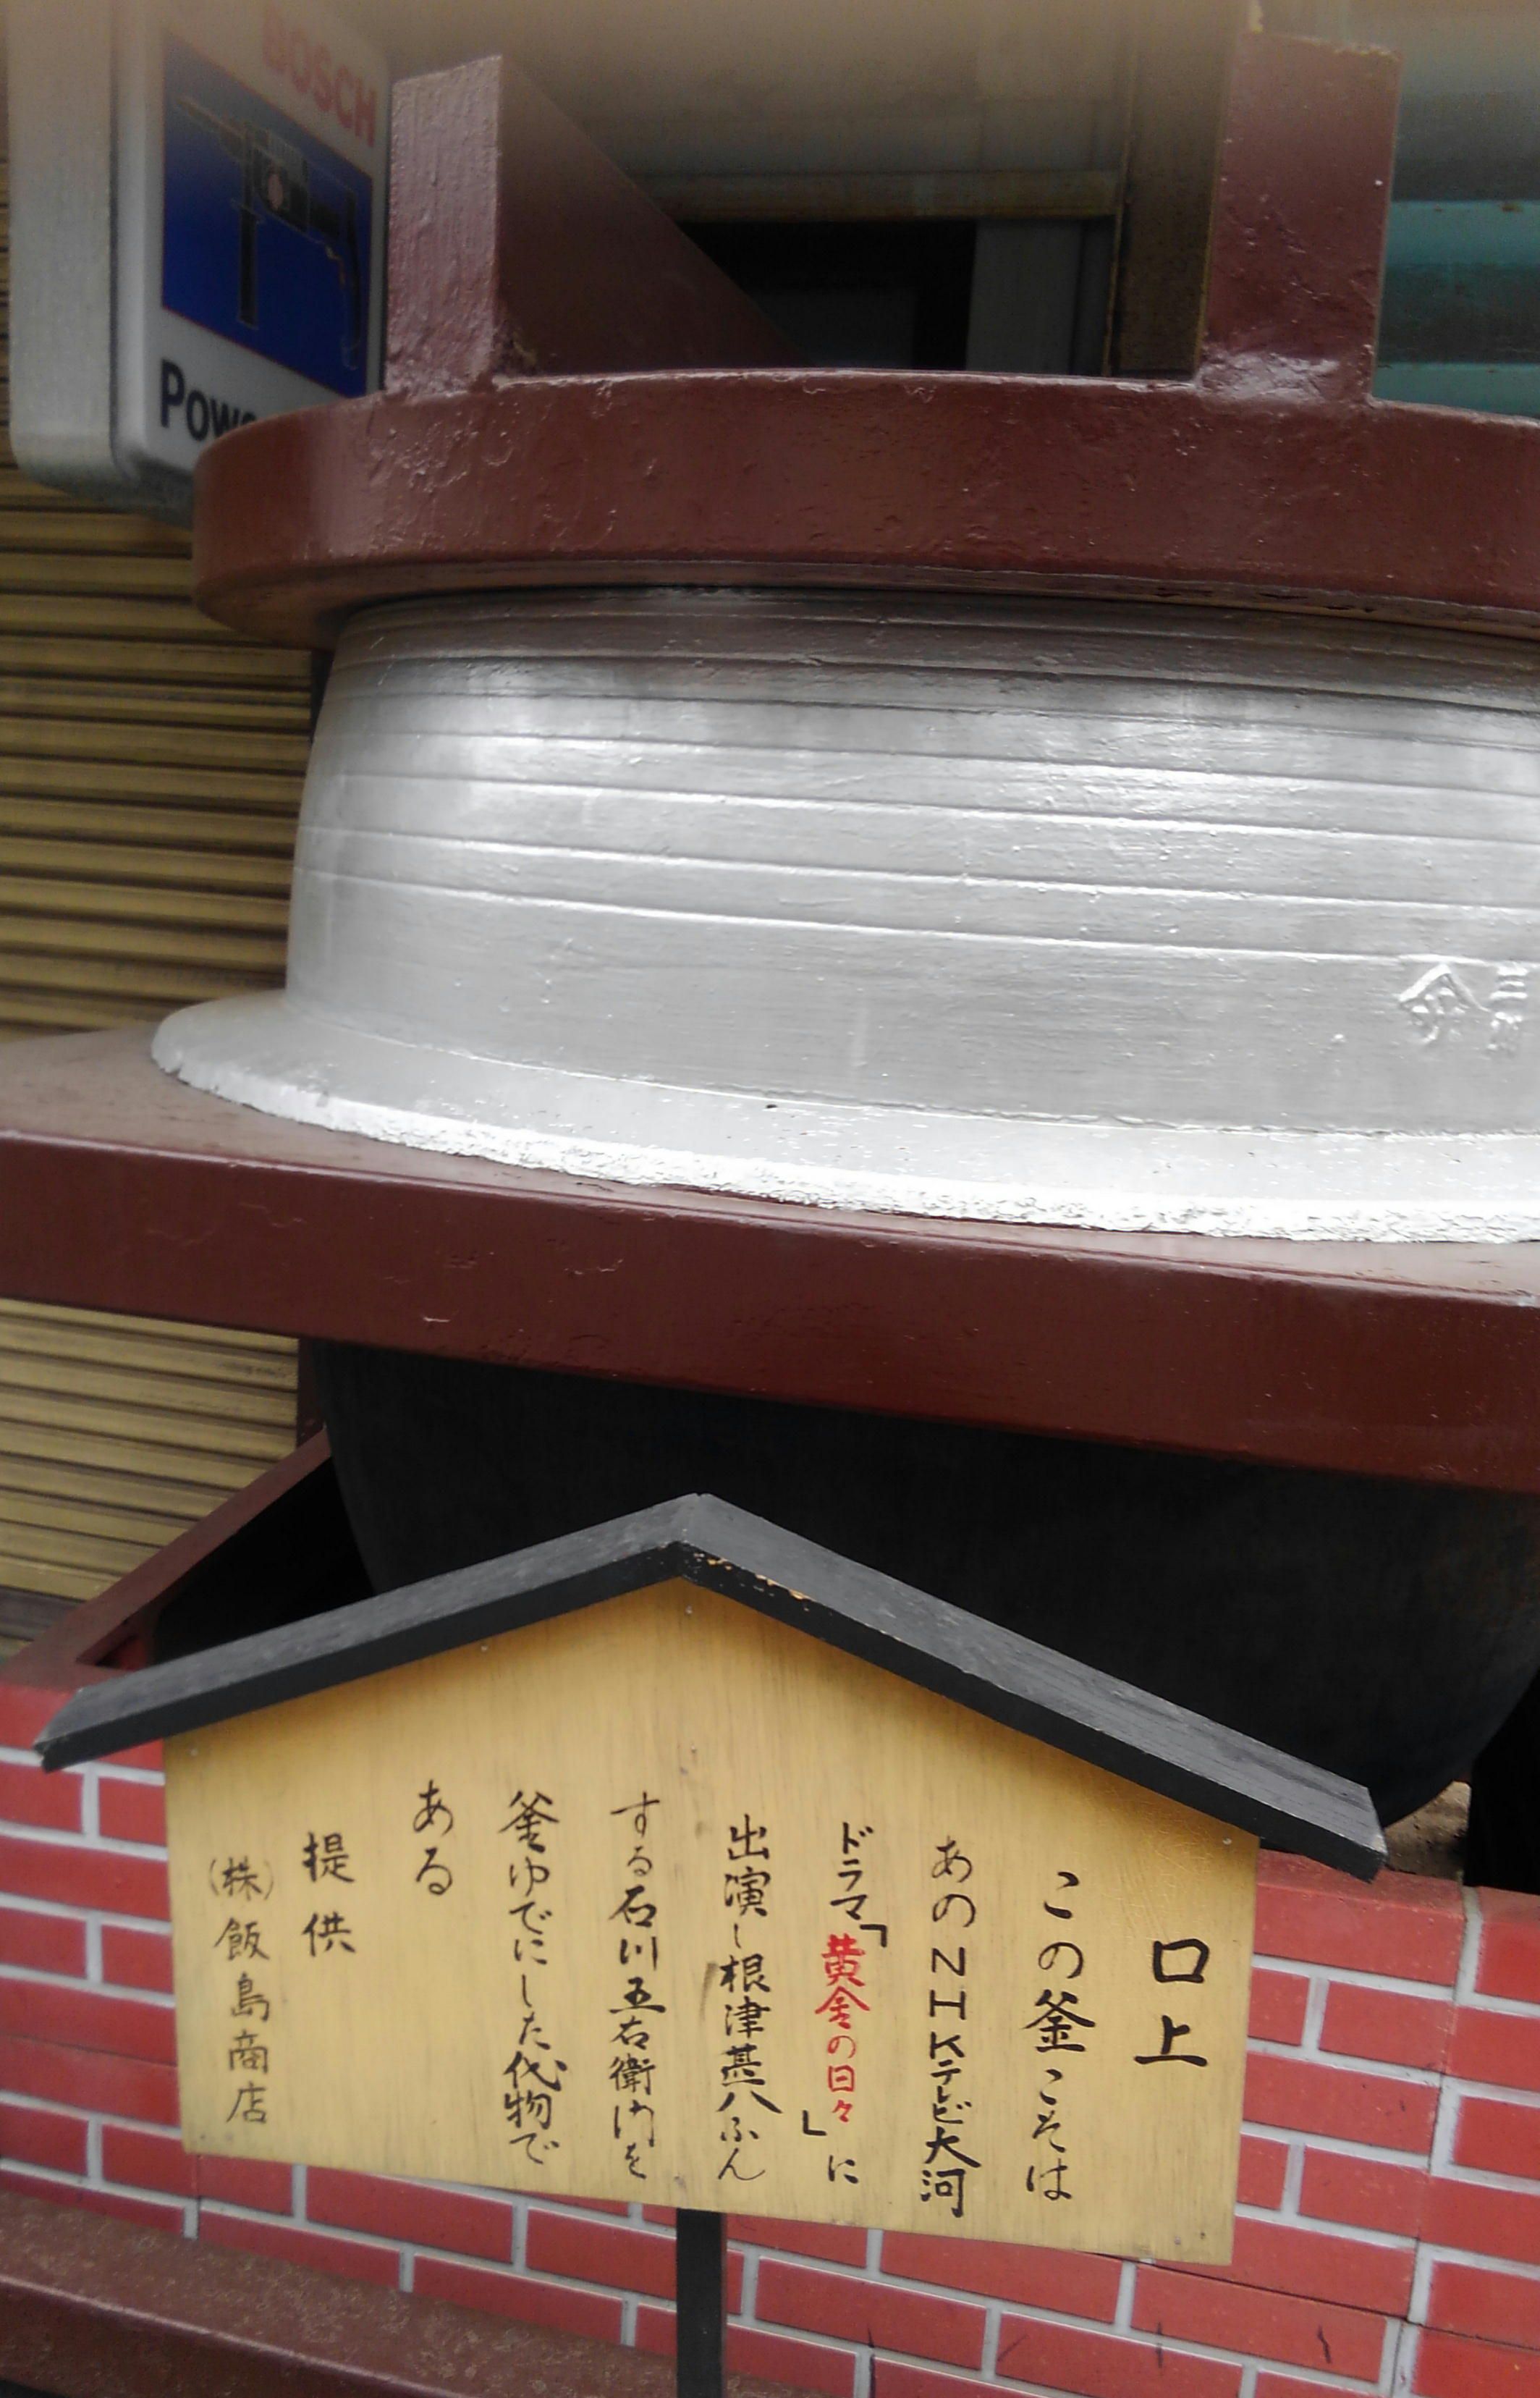 守る 護る 衛る 石川五右衛門の 衛門 は 宮中の警備 60ばーばの手習い帳 楽天ブログ